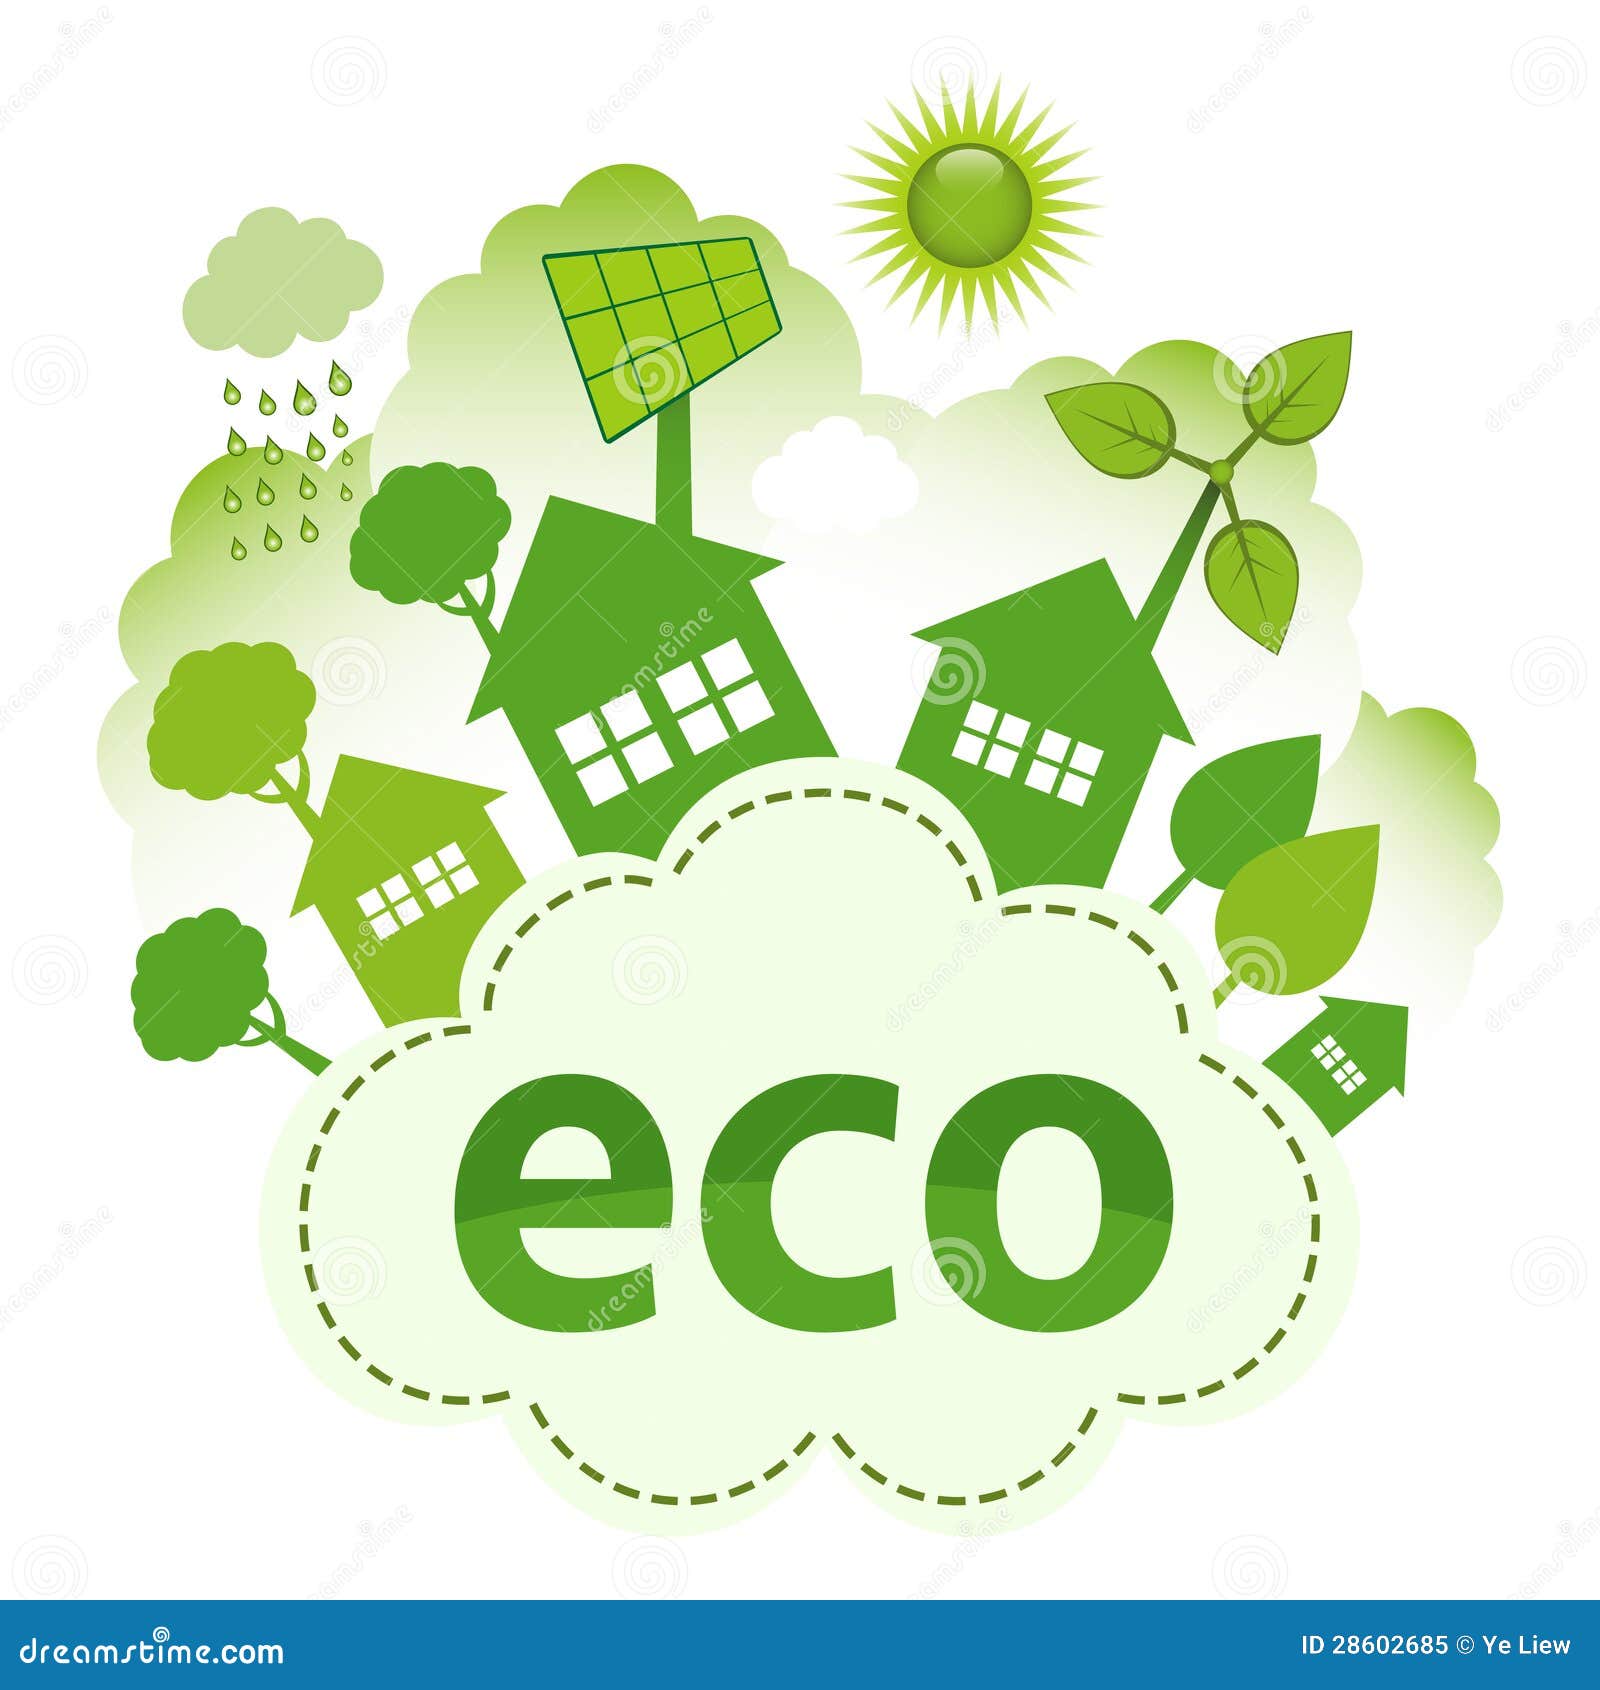 Eco life 1.31. Жизнь в стиле эко. Эко логотип. Экологический стиль жизни. Логотип жизнь в стиле эко.